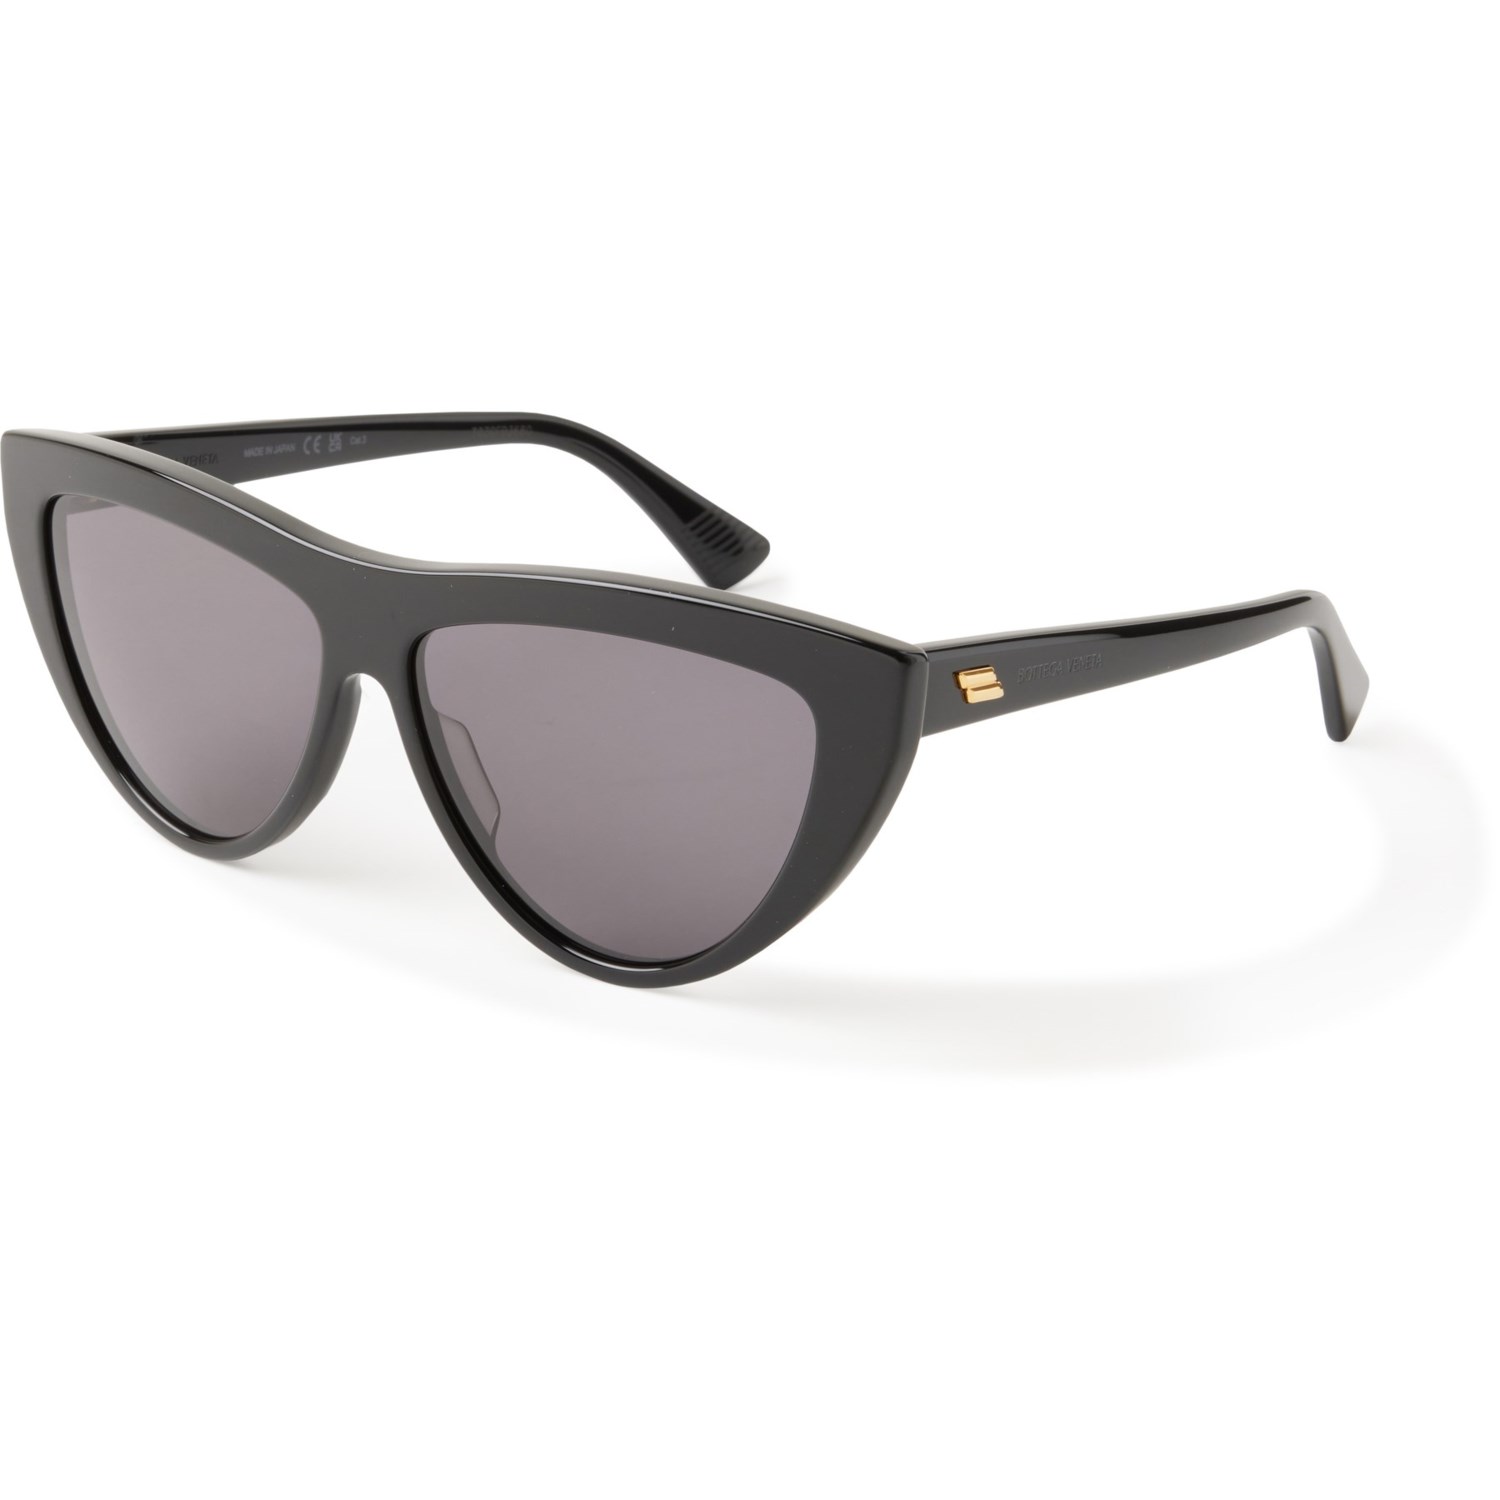 Bottega Veneta Best Sunglasses (For Women) - Save 62%